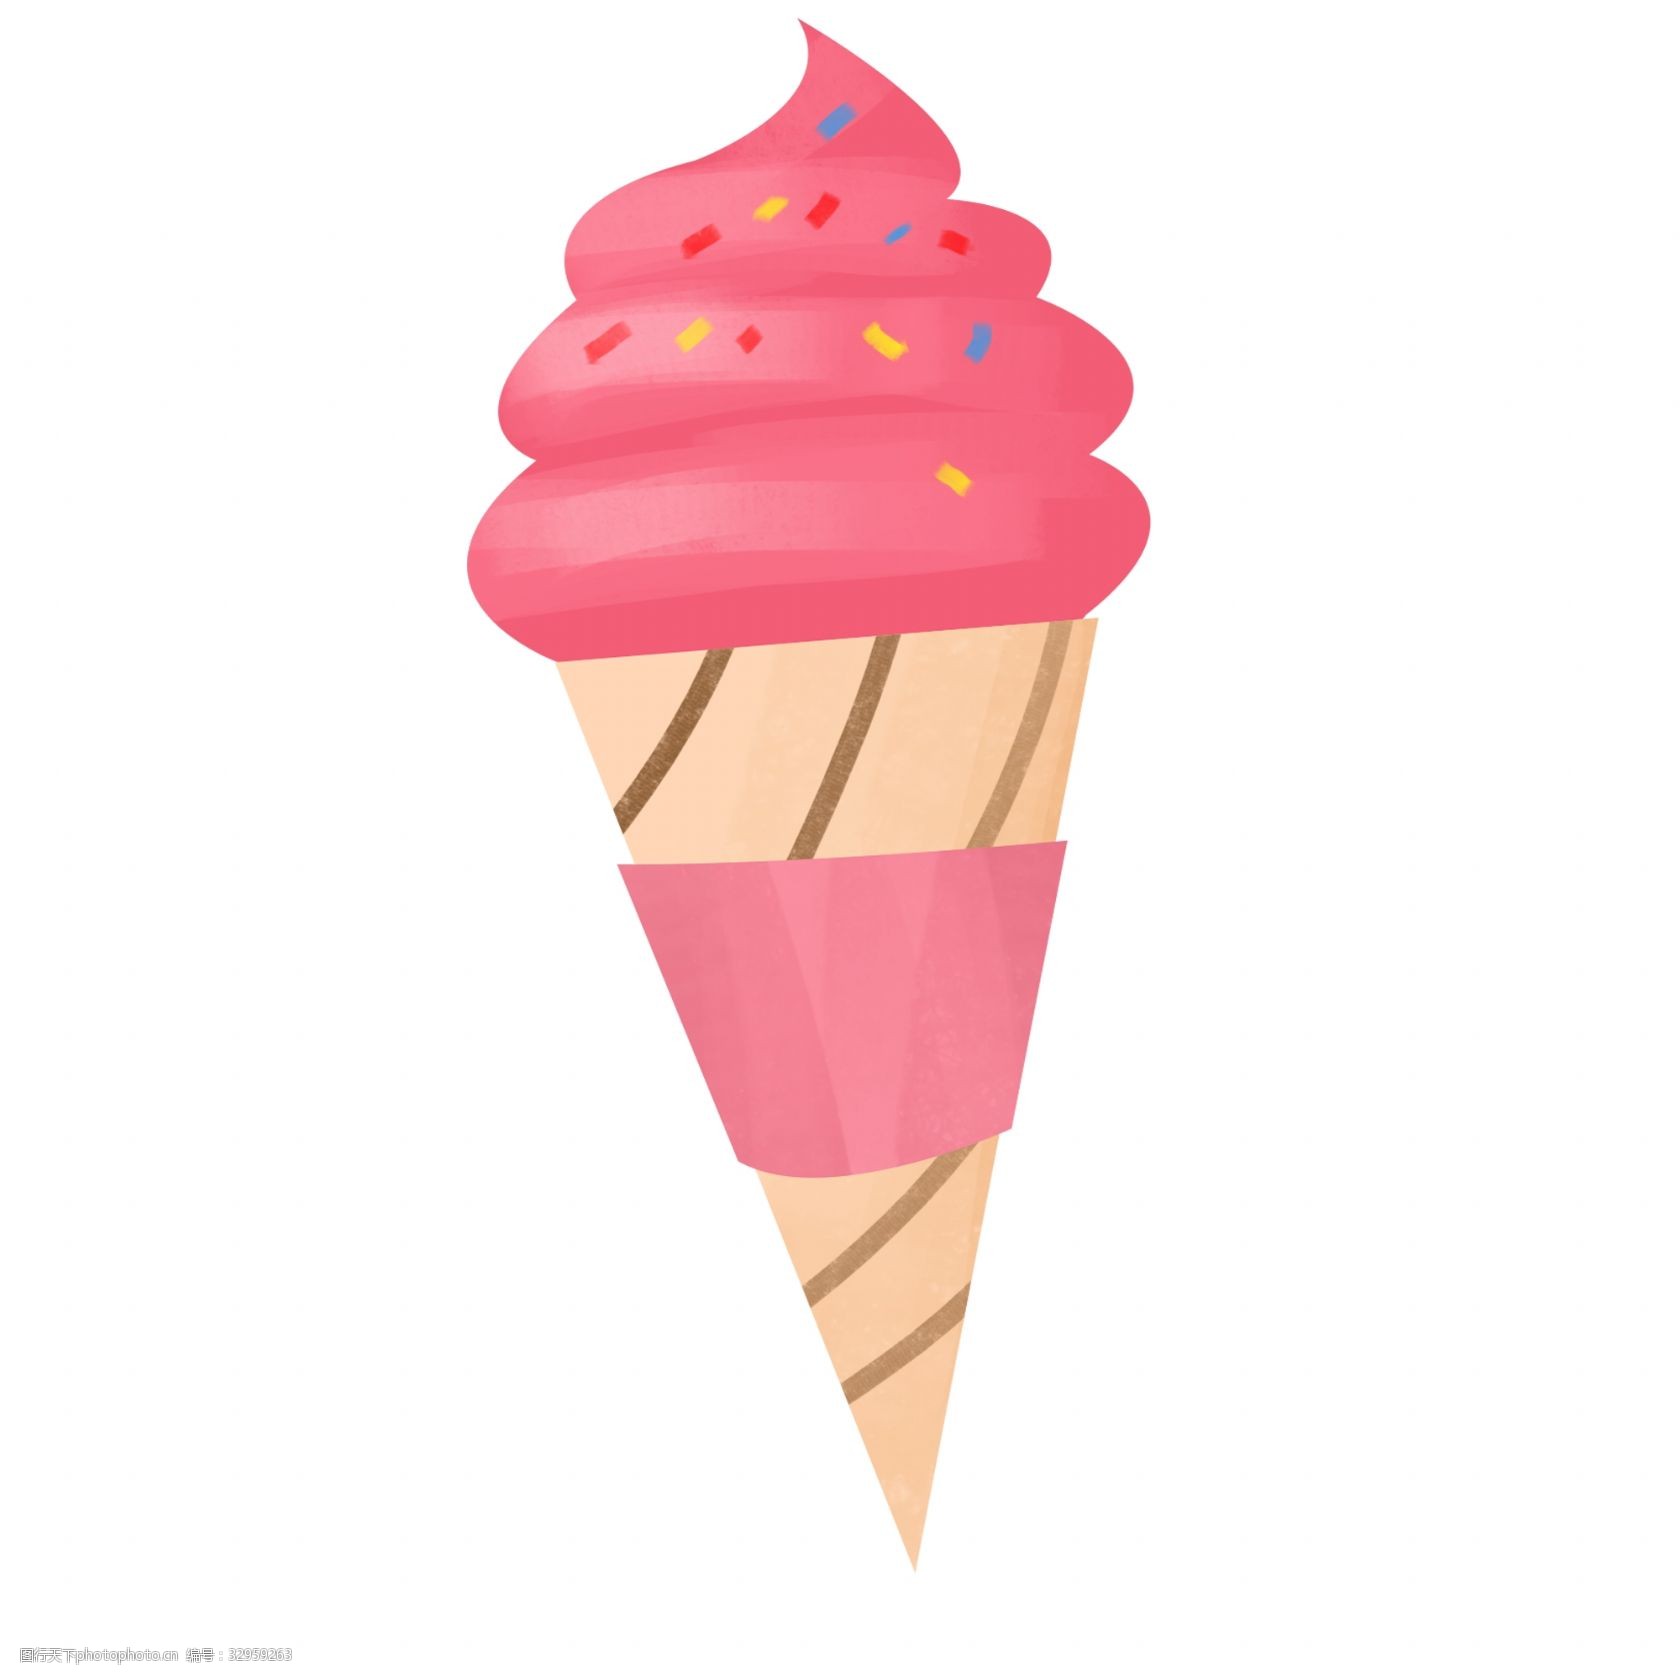 冰淇淋 夏天 卡通手绘 少女心 粉色 可爱 儿童 冷饮 甜筒 夏季 凉爽